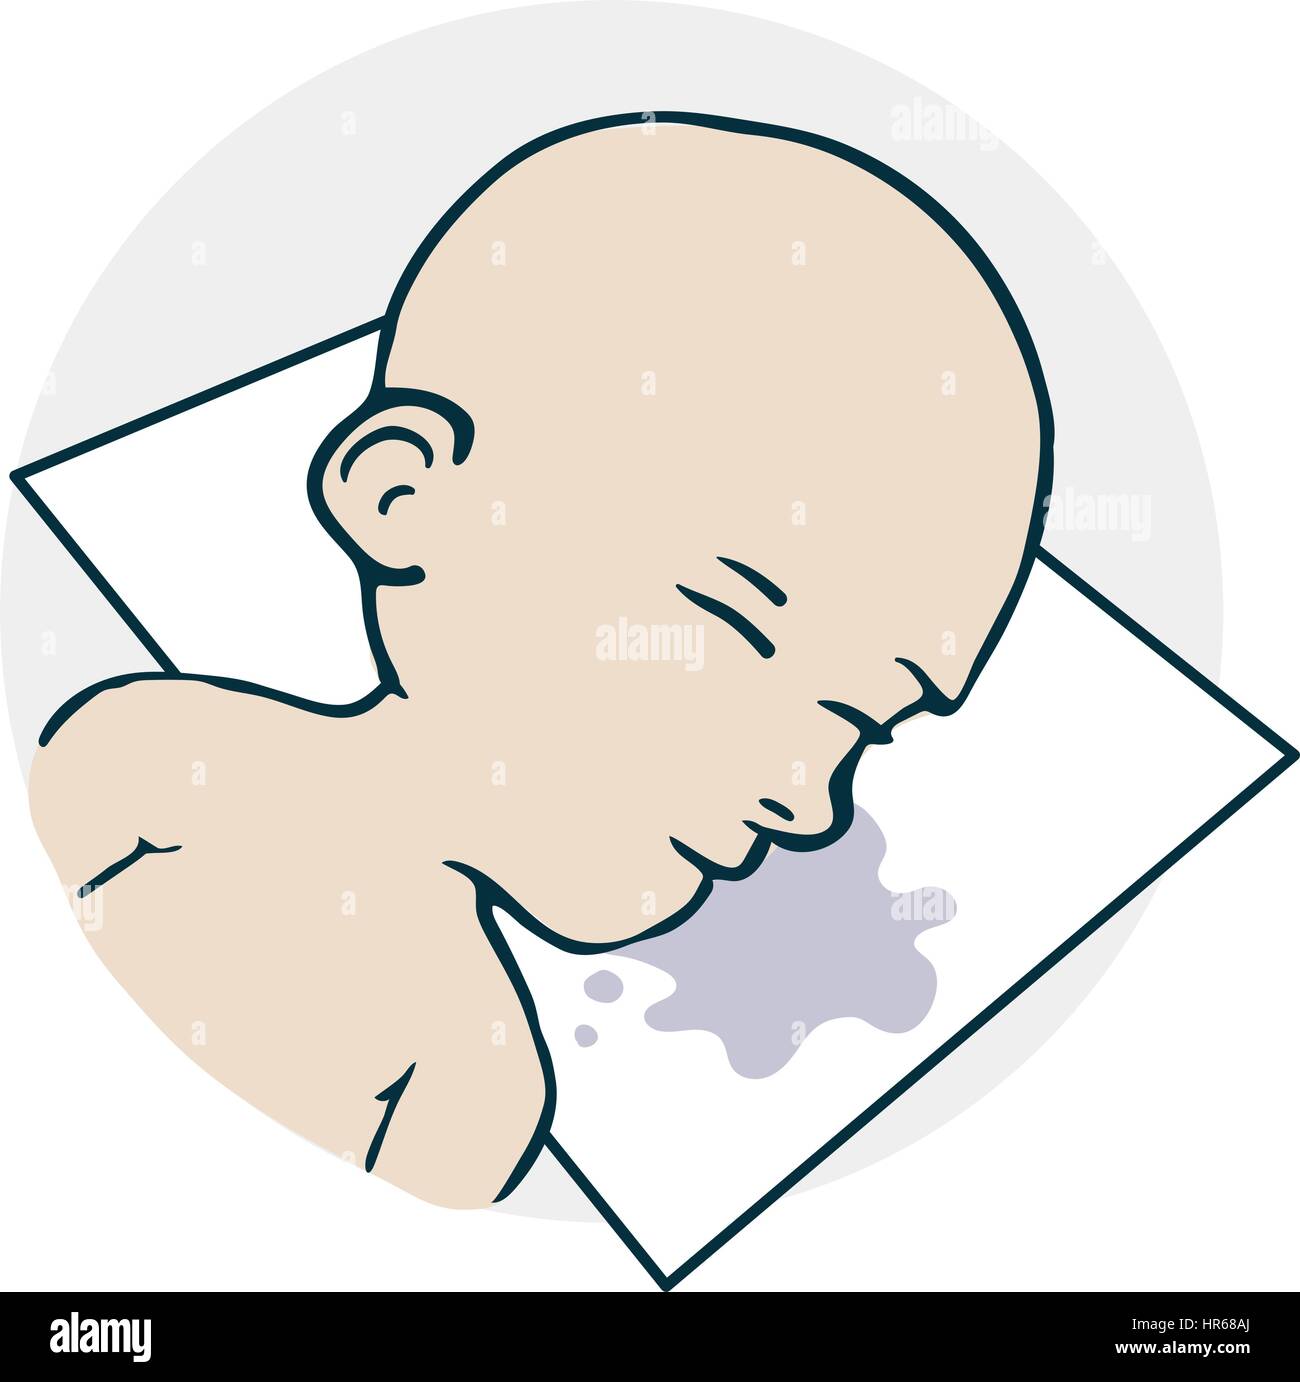 Das Baby schläft auf einem Kissen-Symbol. Beispiel für einen lustigen Cartoon-Stil Stock Vektor